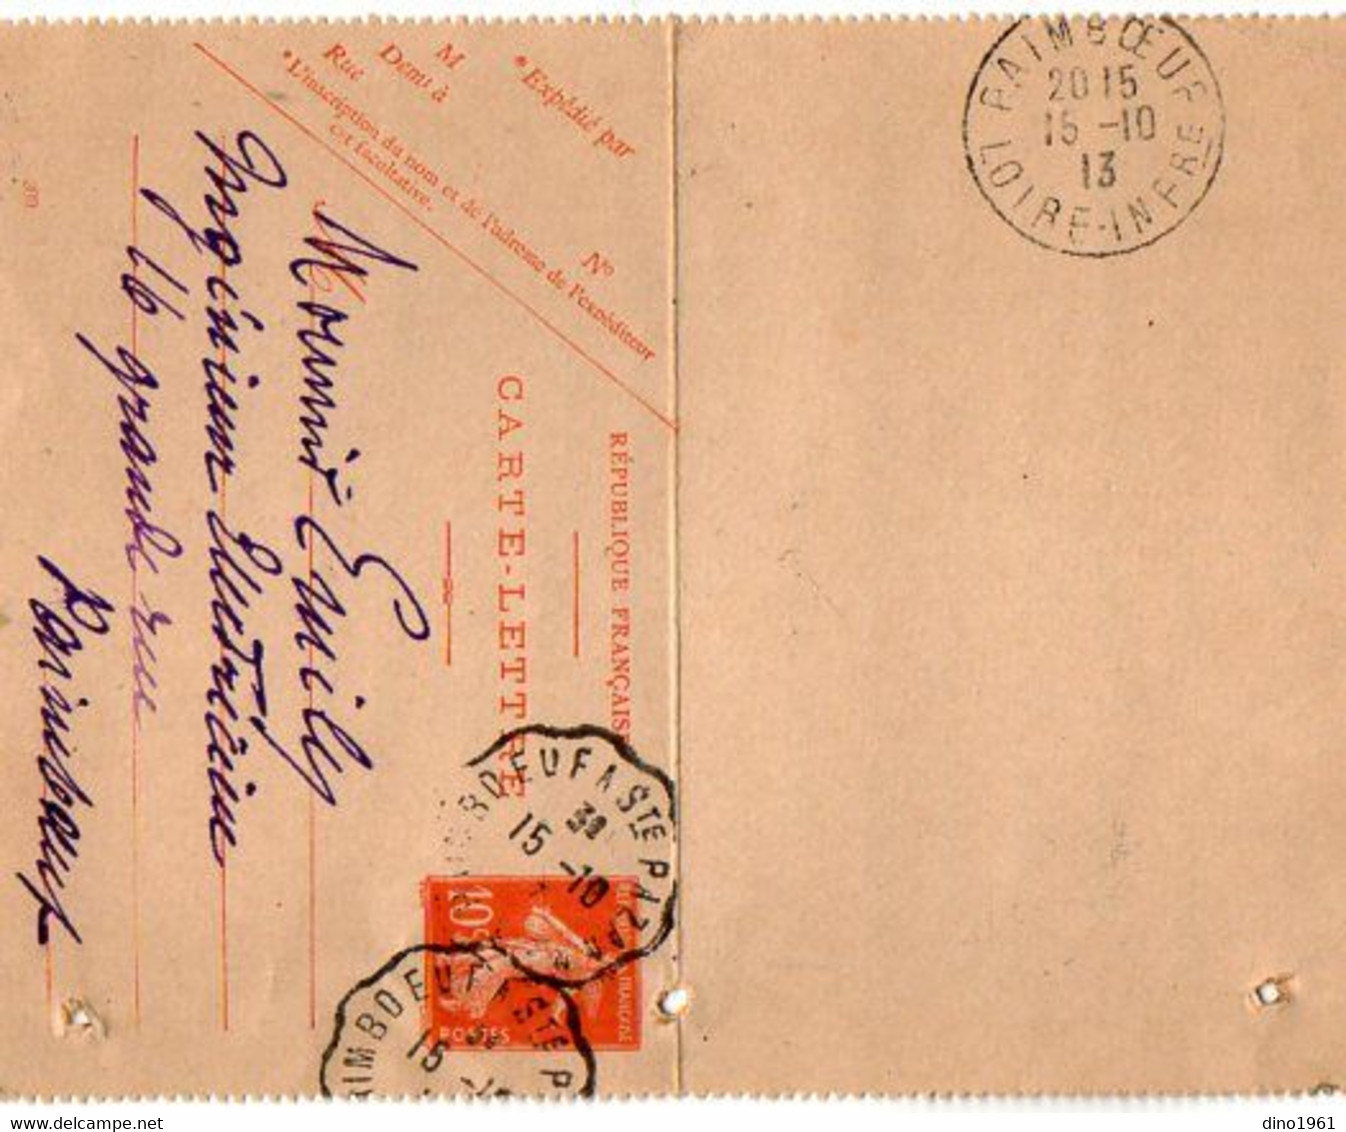 TB 3031 - 1913 - Carte - Lettre - Entier Postal Type Semeuse  MP PAIMBOEUF A SAINTE PAZANNE - Cartes-lettres